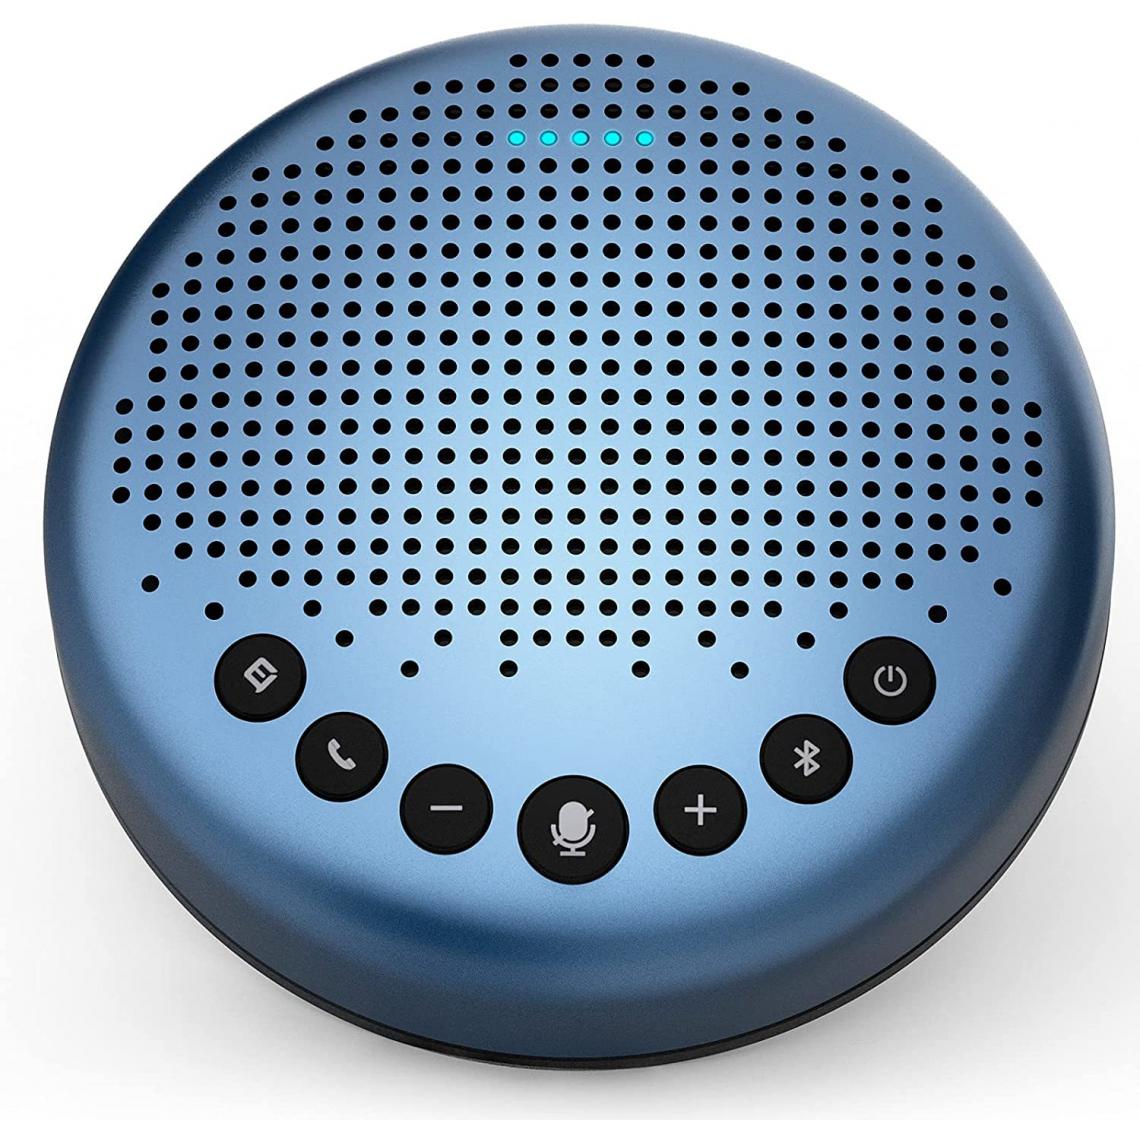 Chrono - Kit mains libres Bluetooth eMeet Conference Speaker-Luna Lite, kit mains libres USB reconnaissance vocale 360°, utilisé pour Zoom, Skype, PC de communication VoIP, Skype for Business, etc.(Bleu) - Enceintes Hifi